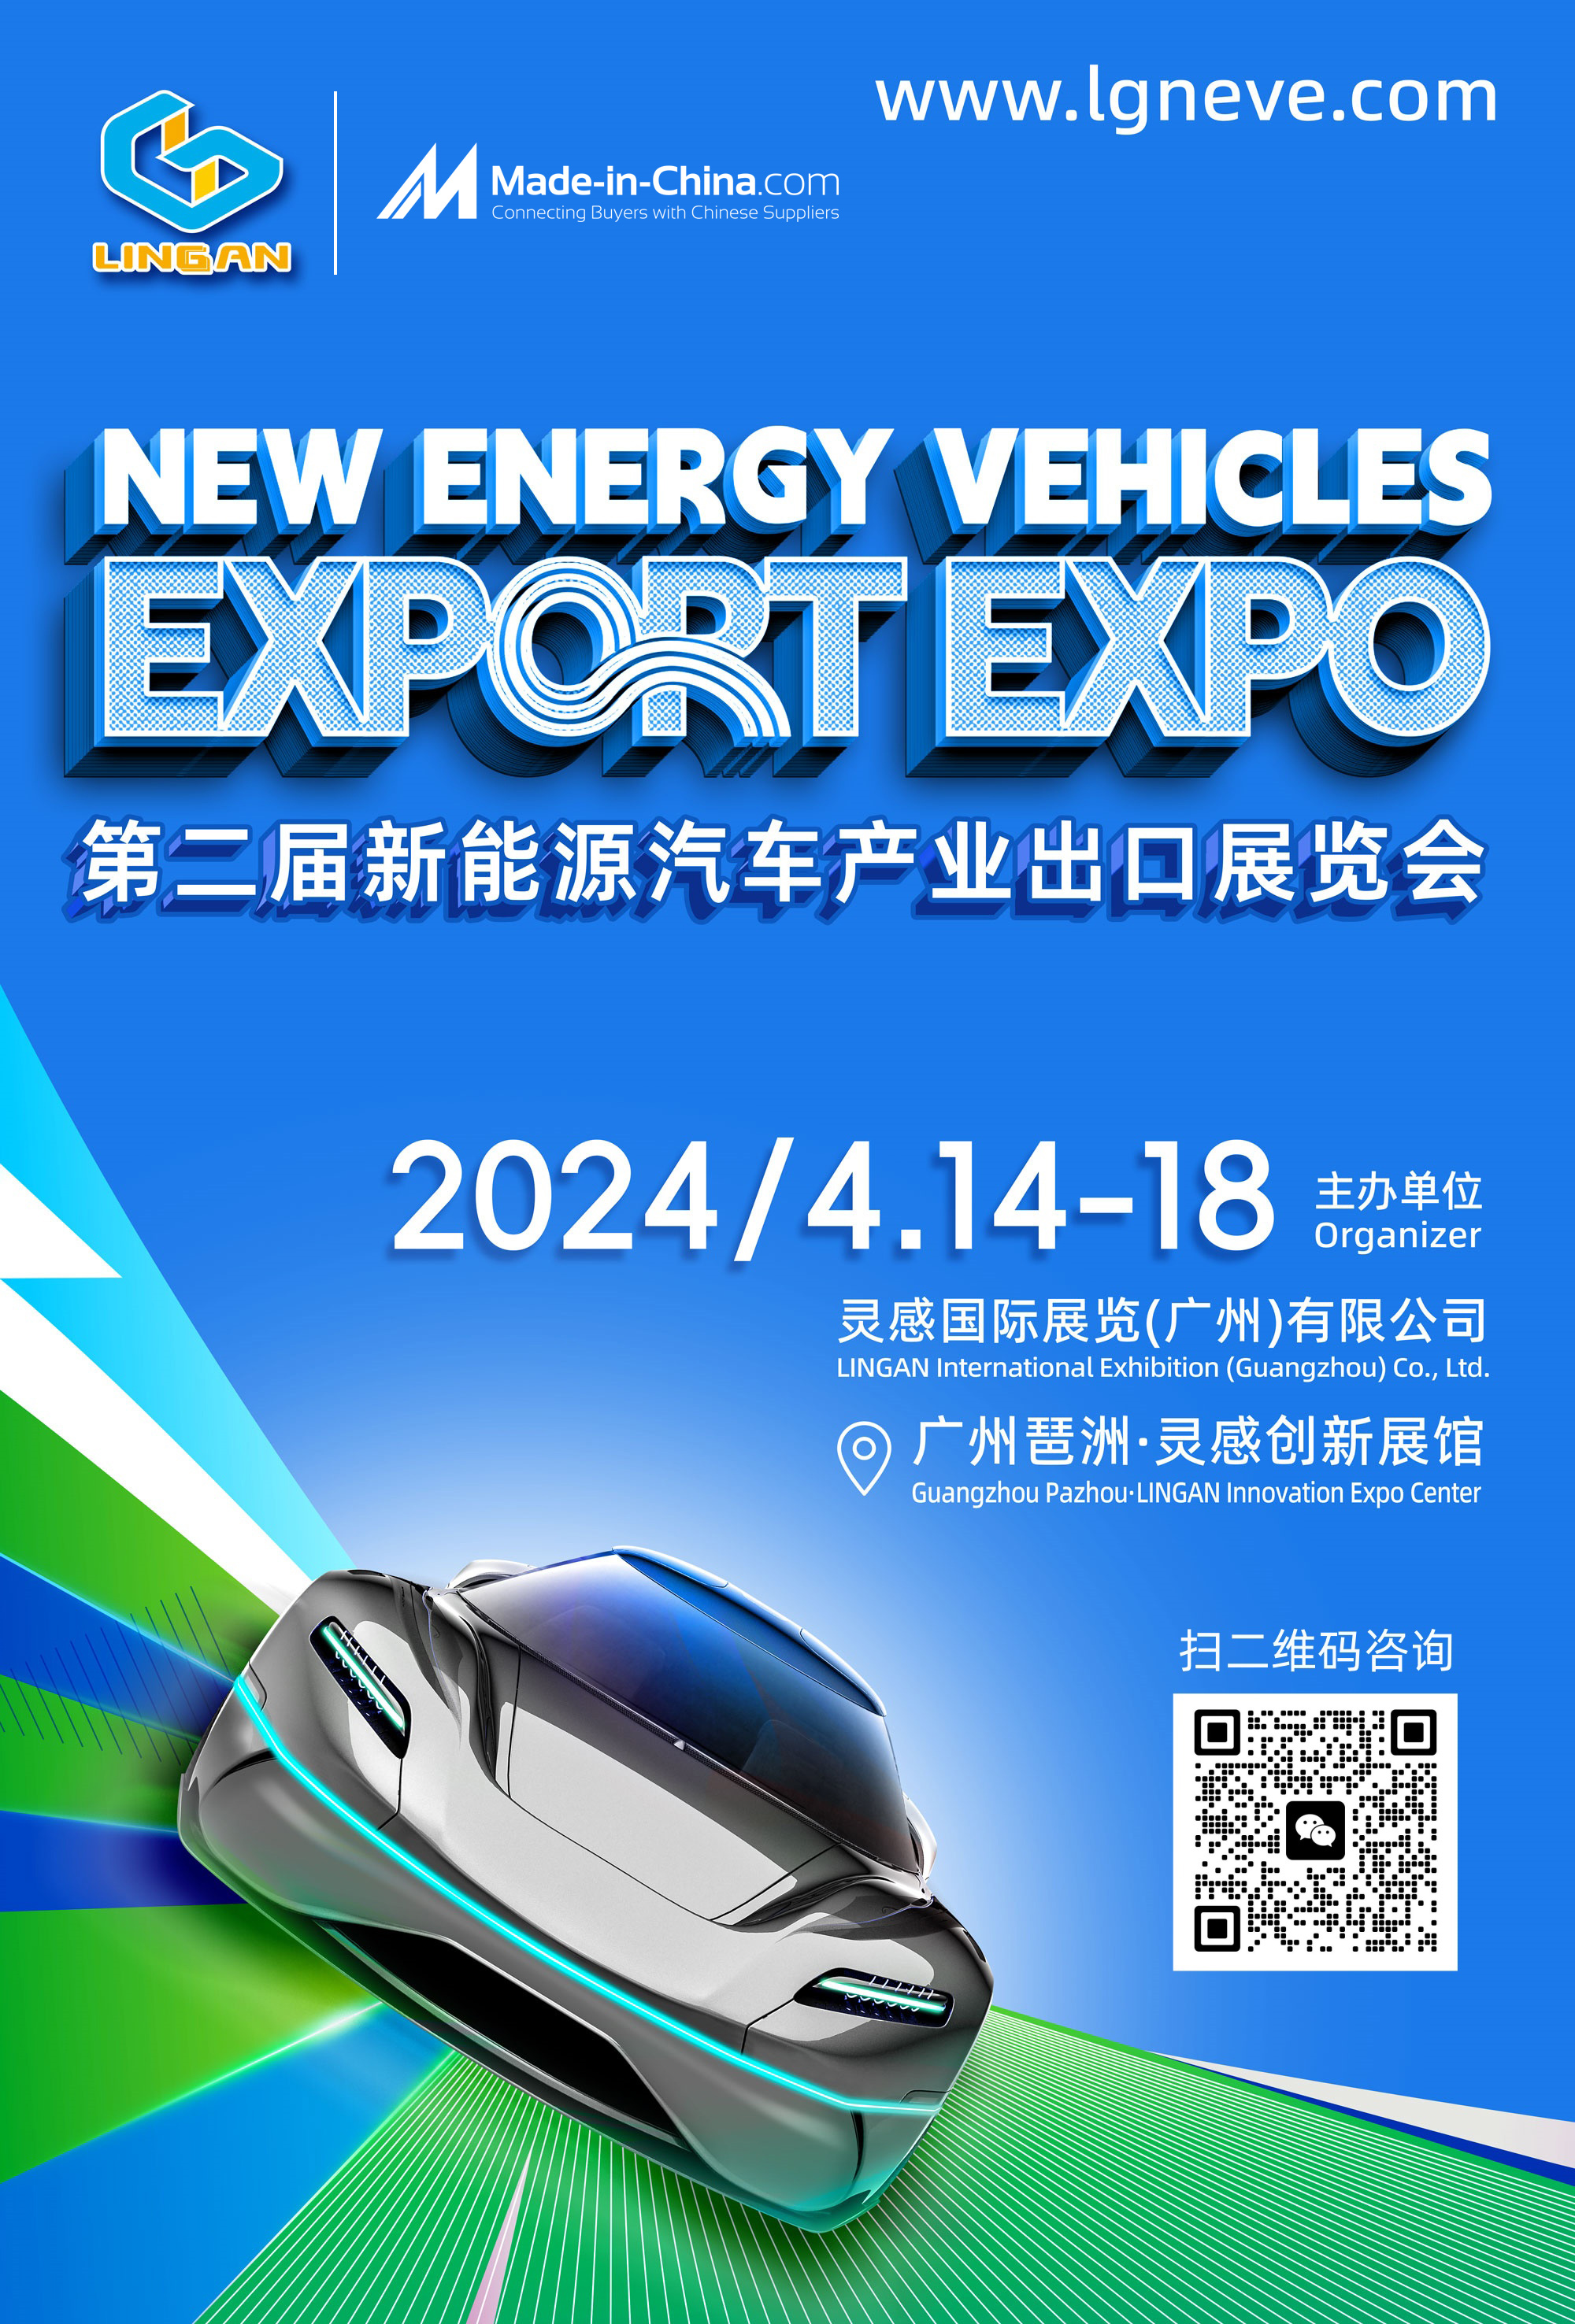 第二届新能源汽车产业出口展览会热力开启